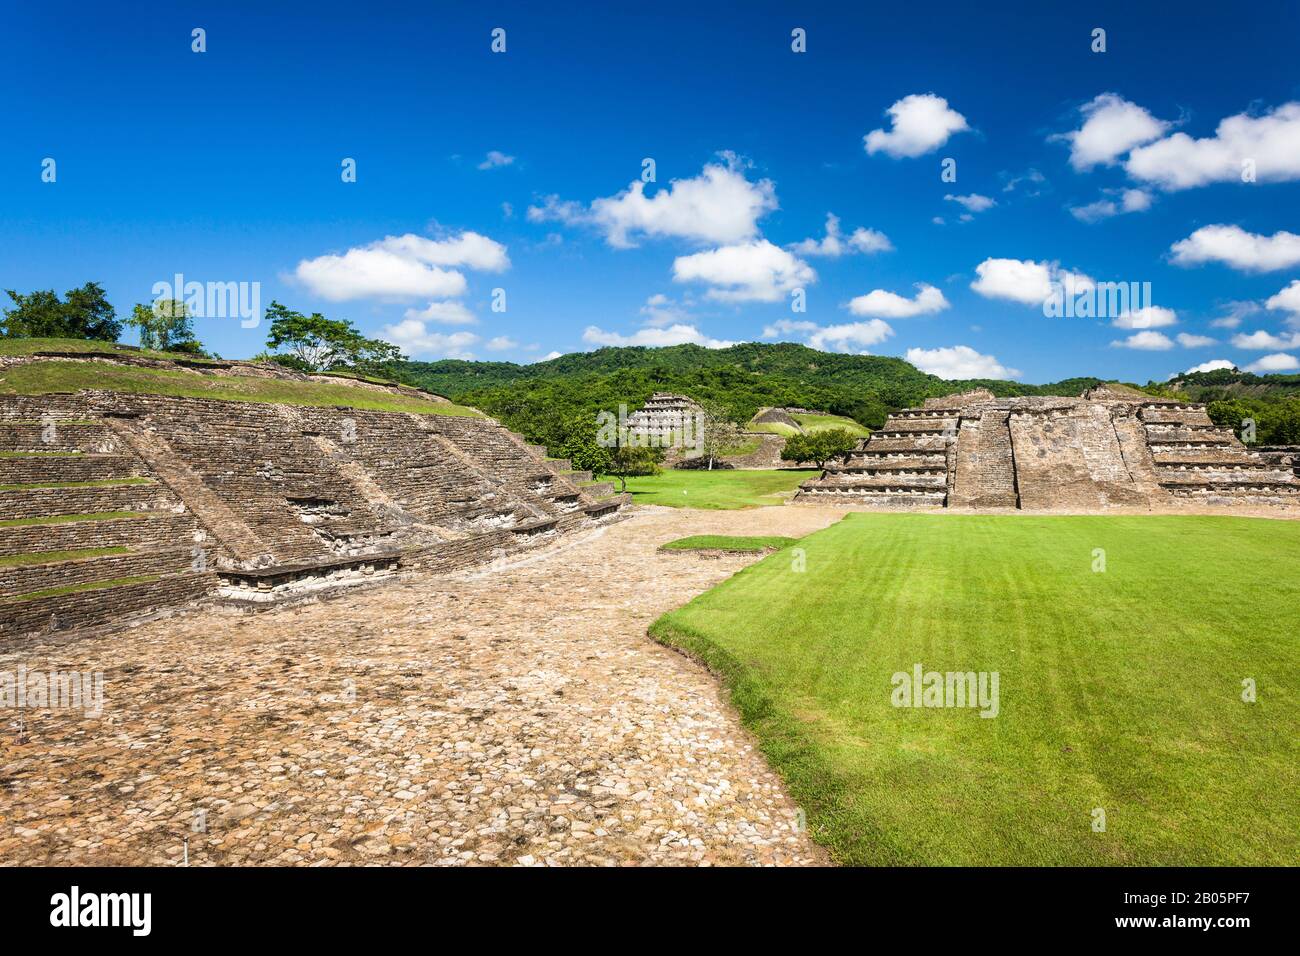 Gruppo Arroyo di El Tajin, il più importante sito archeologico della Mesoamerica nord-orientale, rovine Maya, Veracruz, Messico, America Centrale Foto Stock